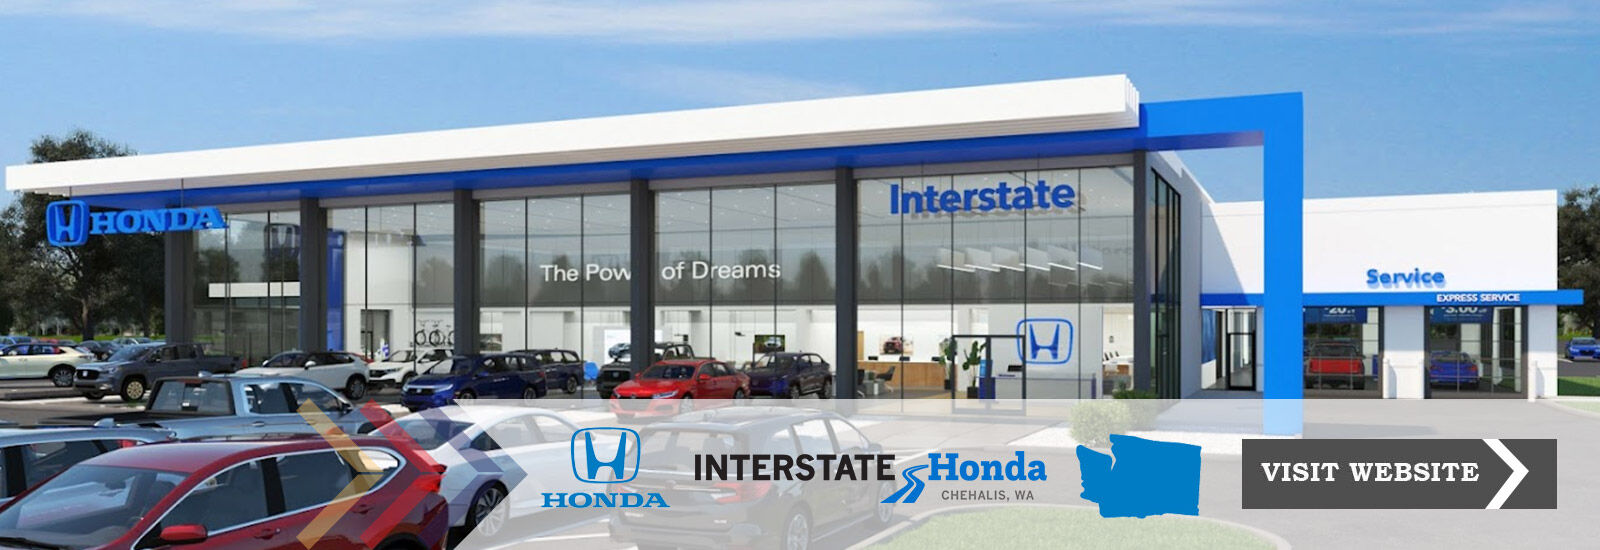 Interstate Honda - Chehalis, WA